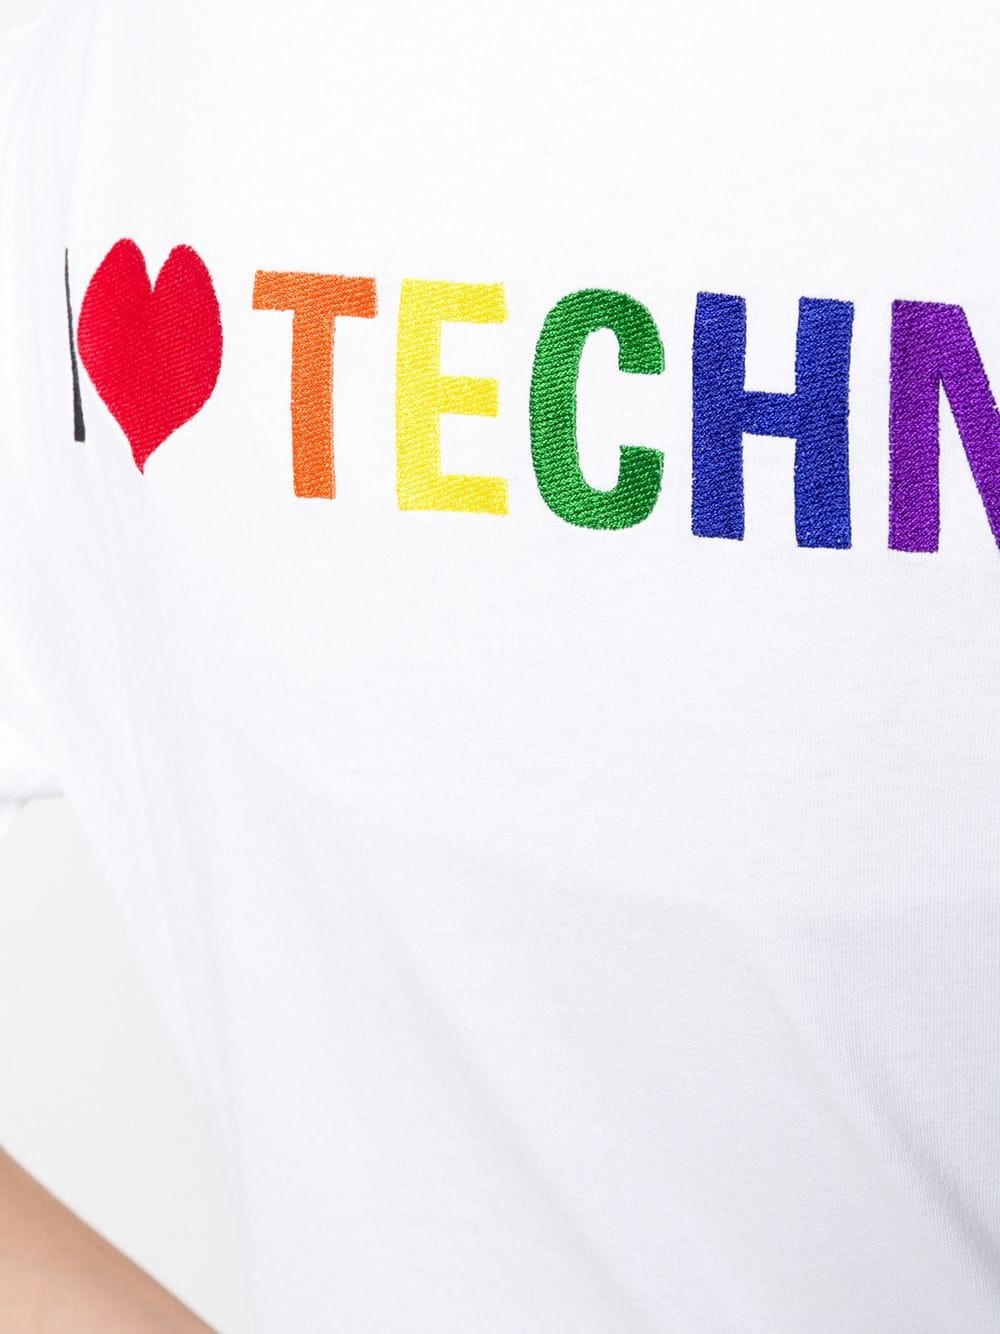 balenciaga i love techno t shirt